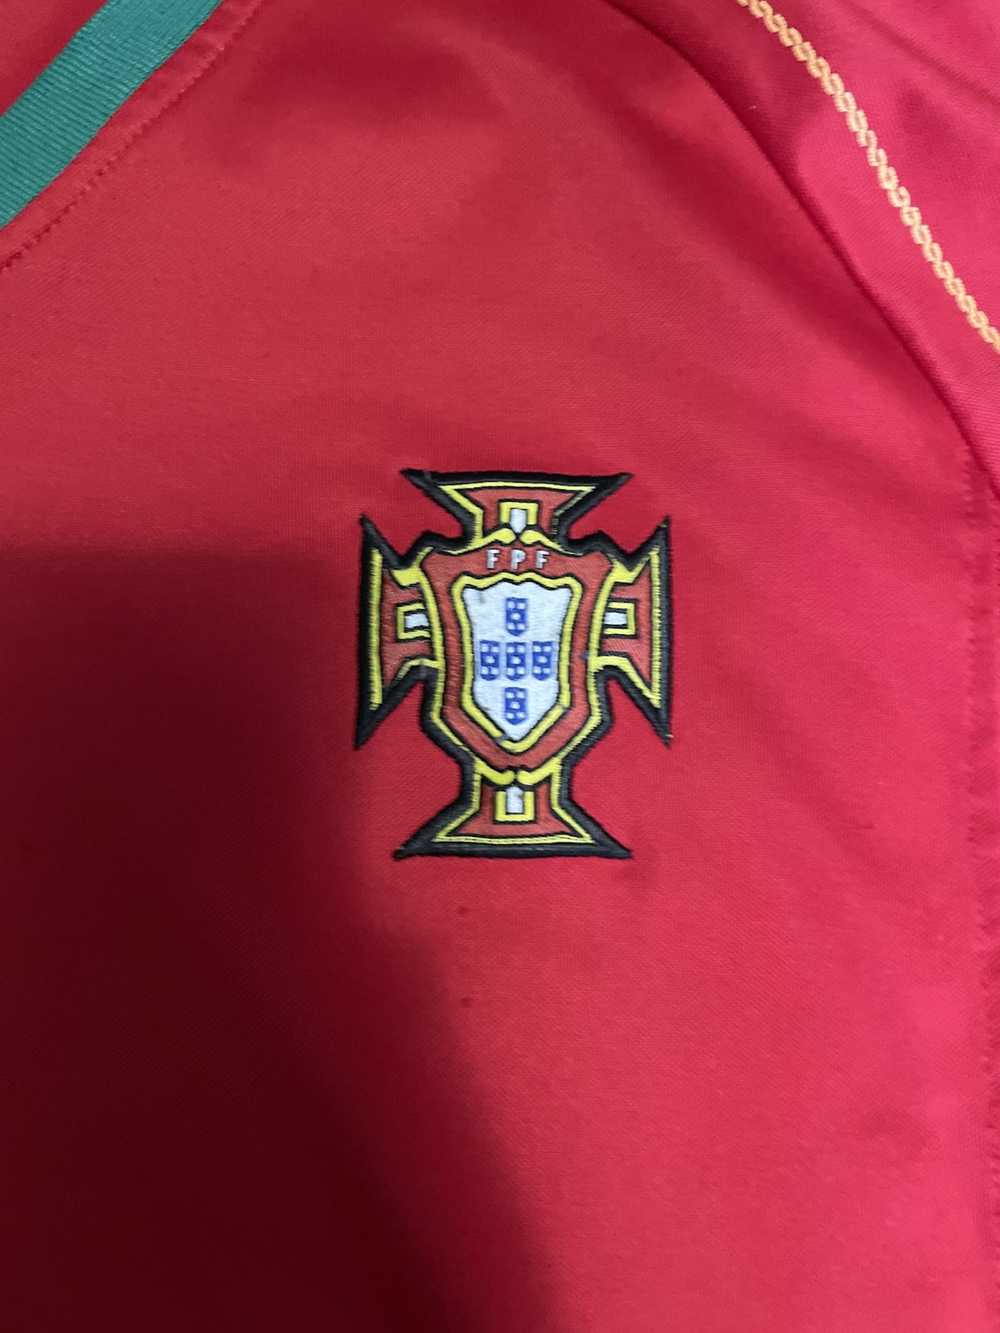 Soccer Jersey Portugal Vintage Kit - image 3